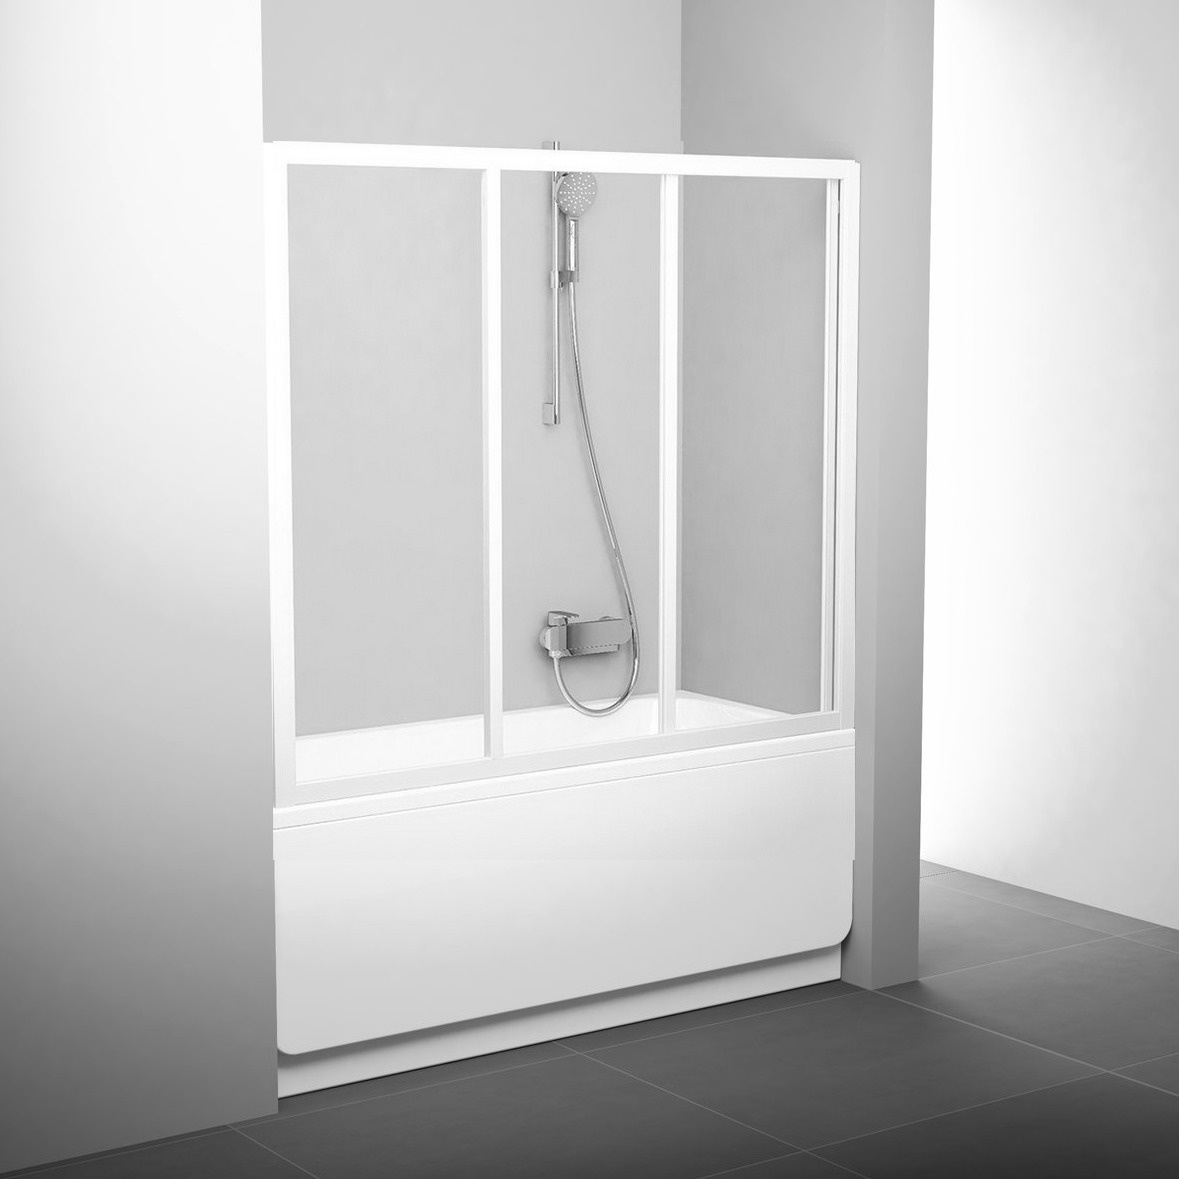 Шторка стеклянная для ванны универсальная трехсекционная раздвижная 137x120см RAVAK AVDP3-120 стекло прозрачное 3мм профиль белый 40VG0102Z1